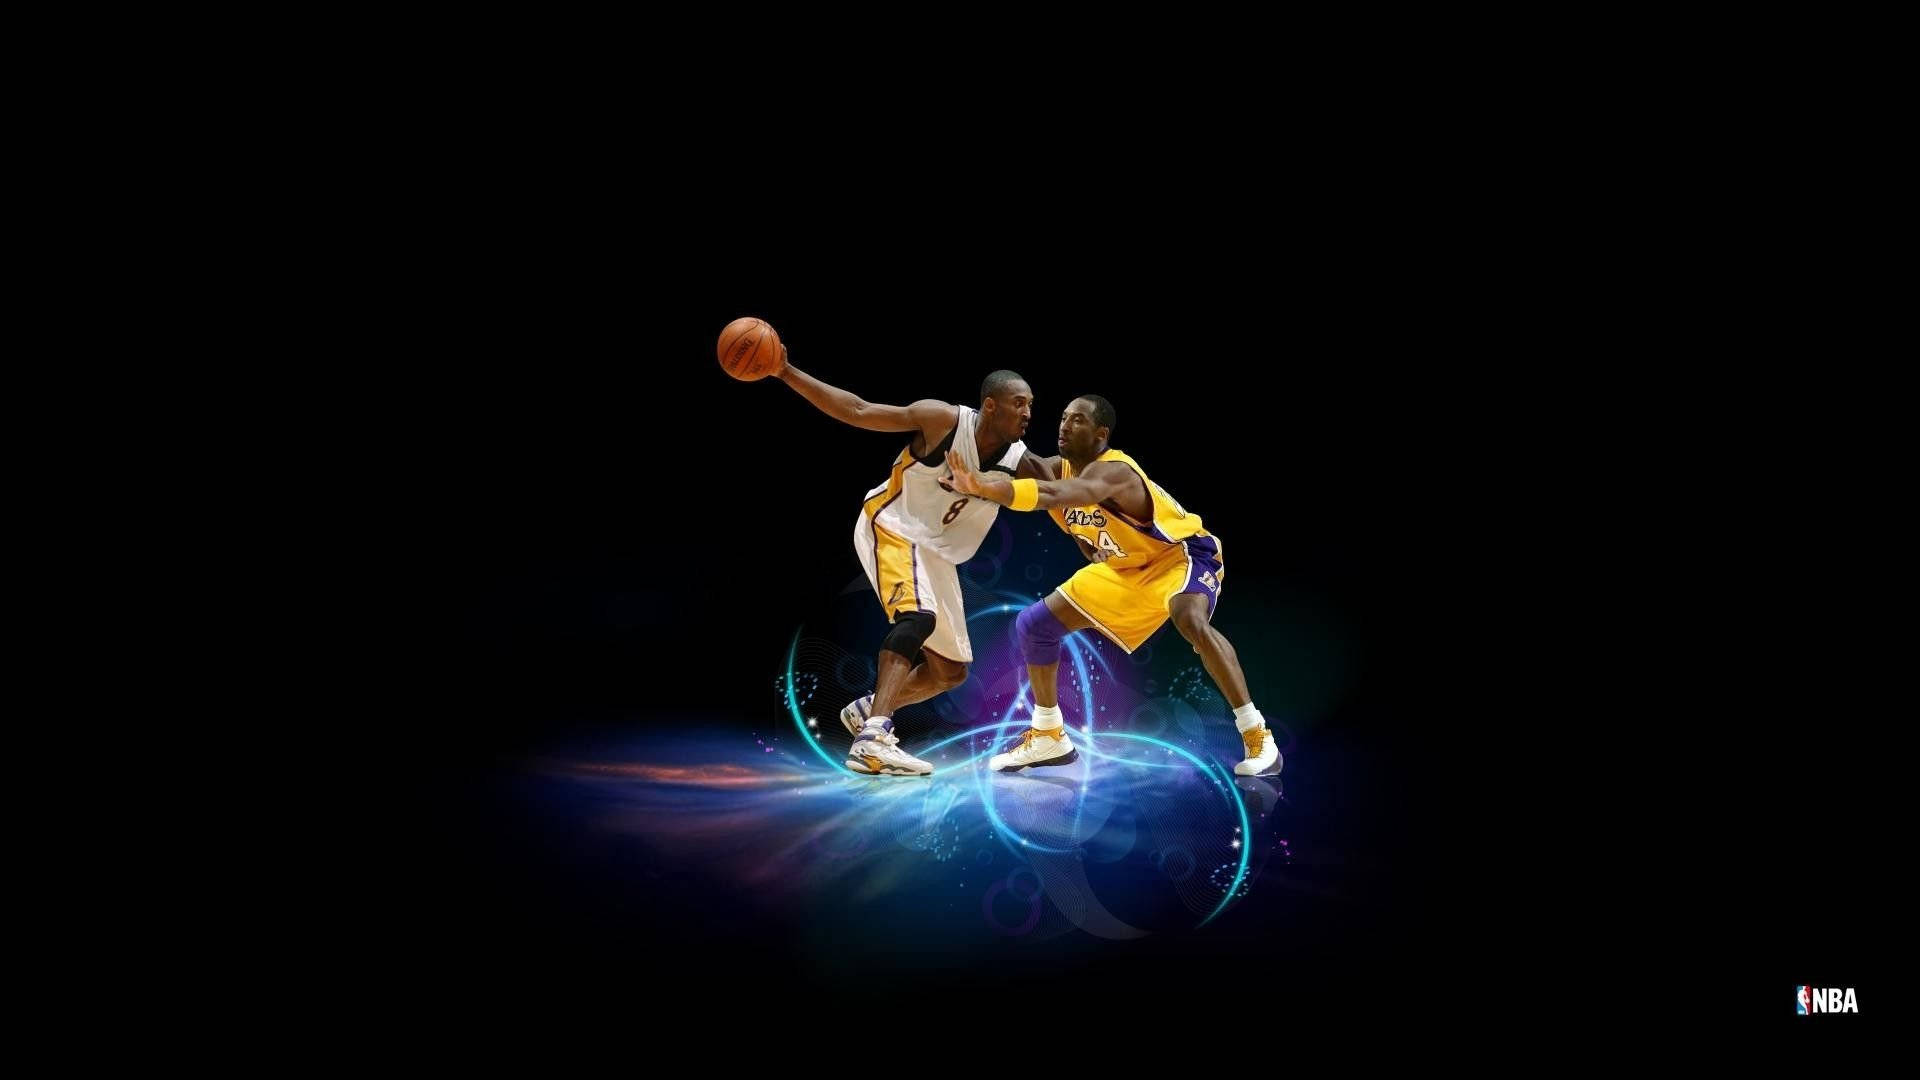 Cool Basketball Players Minimalist Background